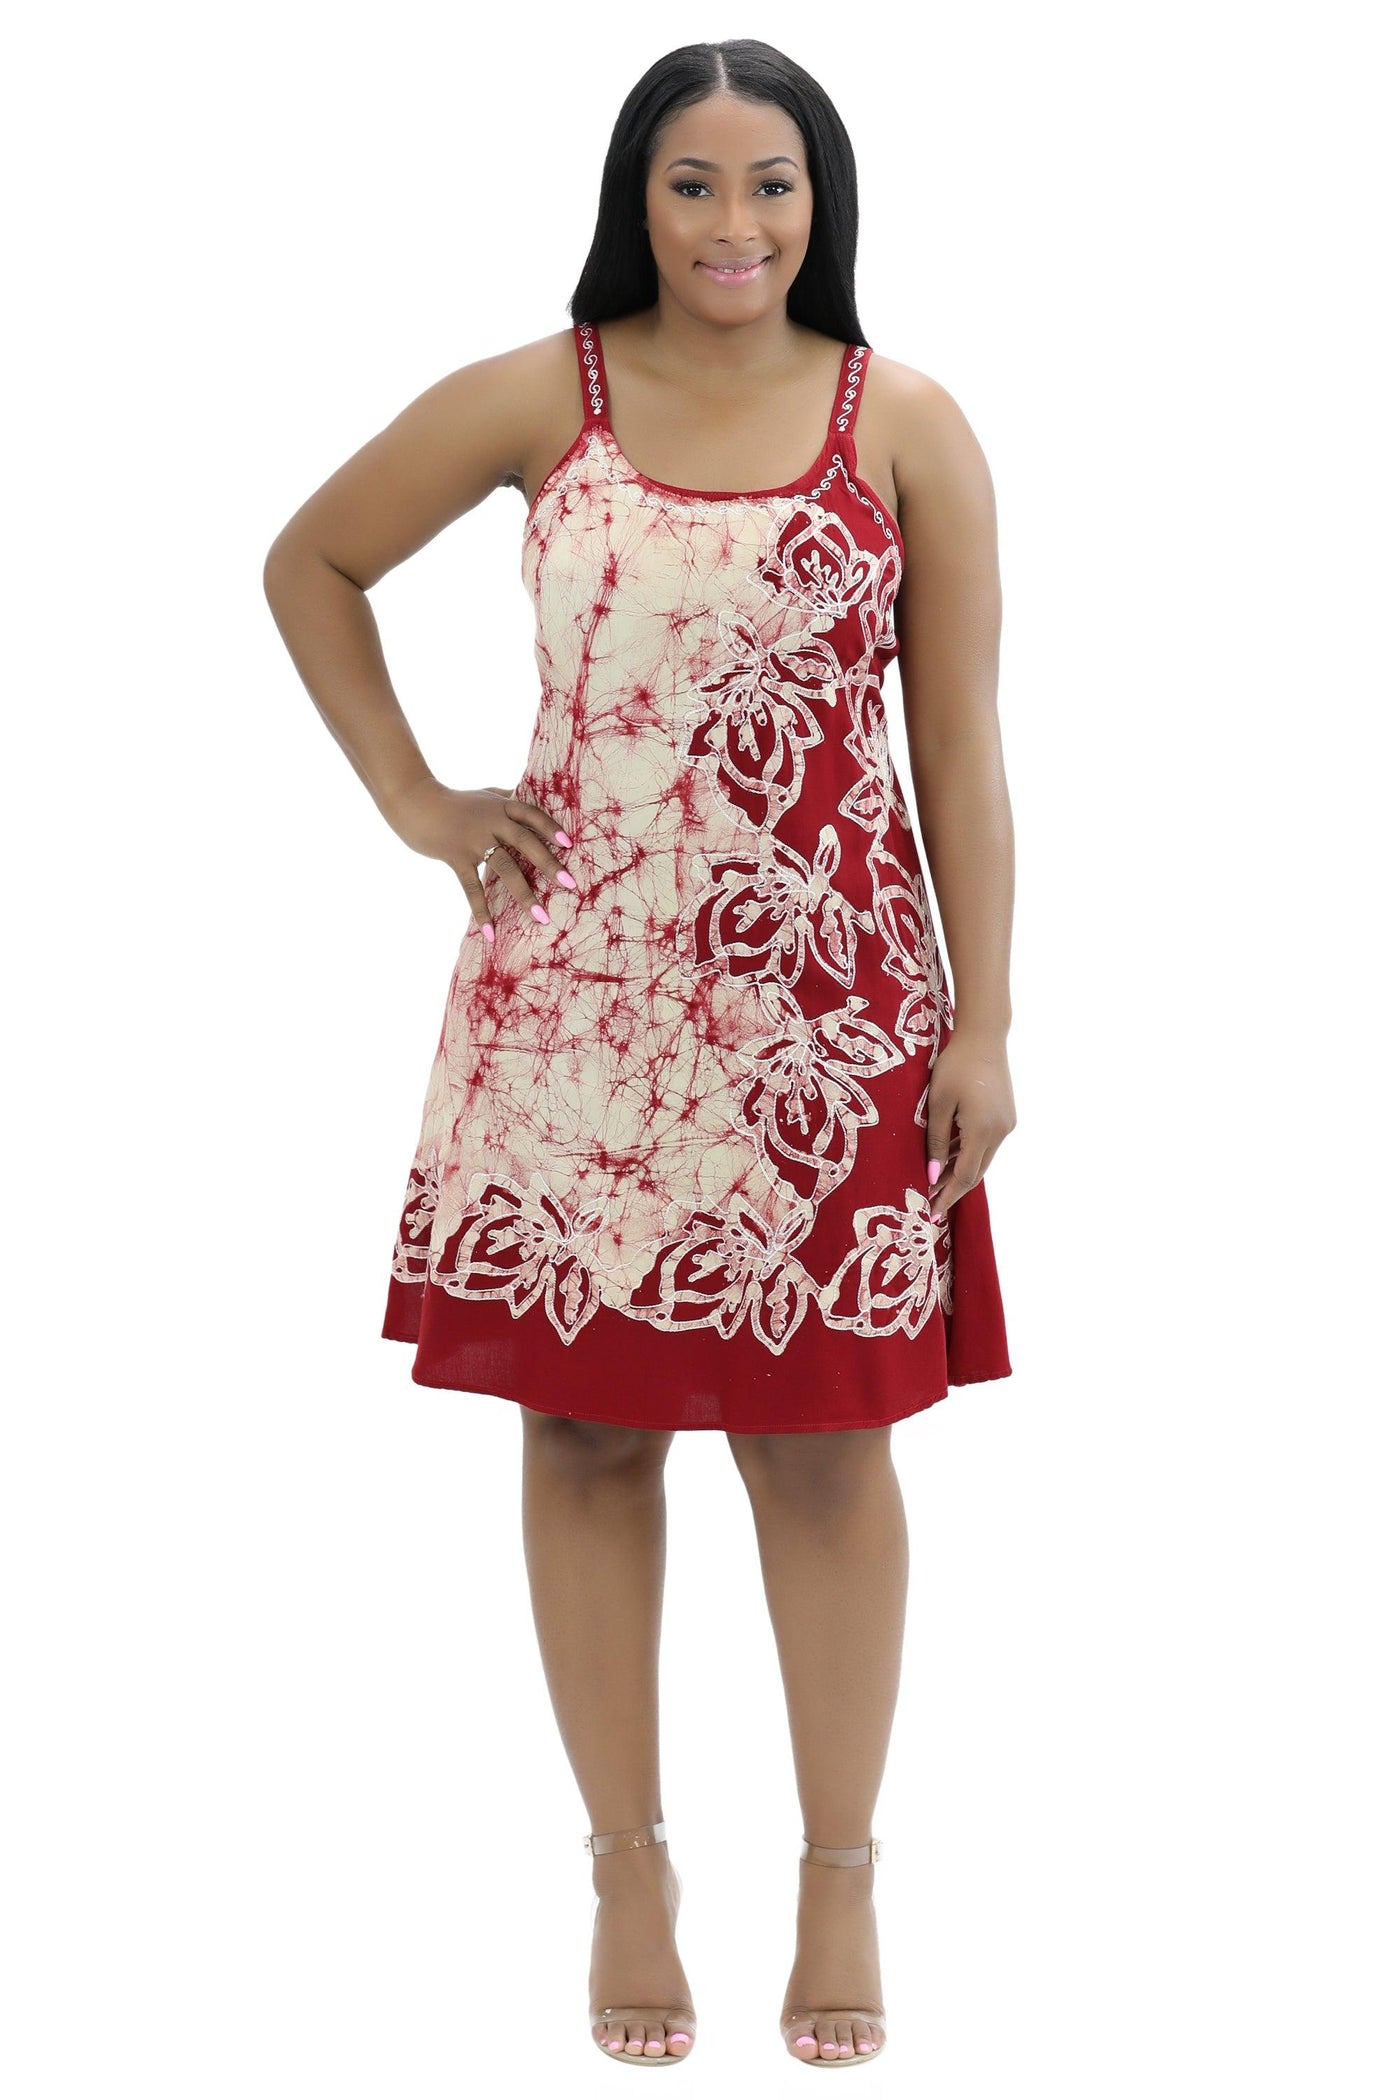 Batik Block Print Dress 54A-BATIK